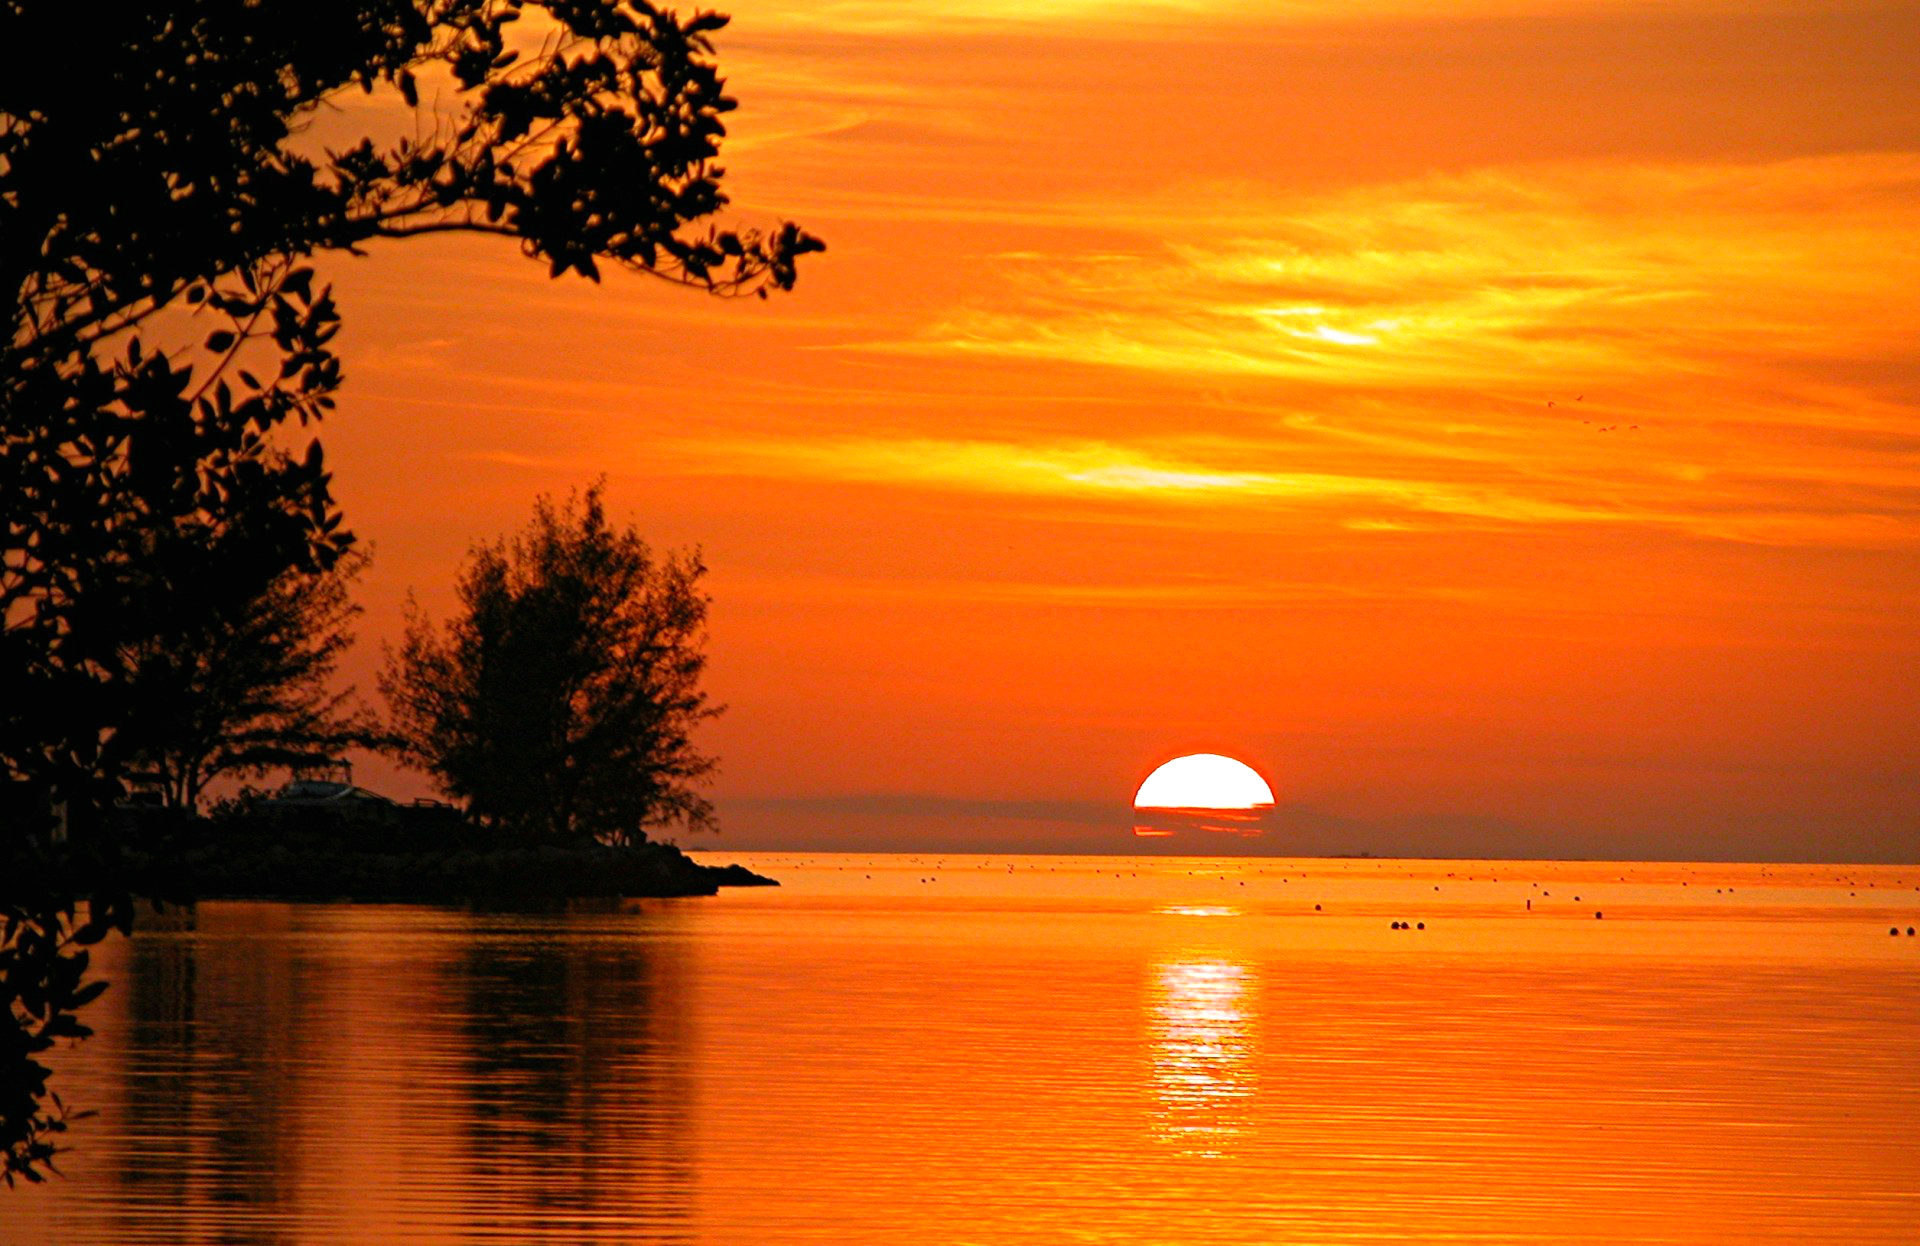 Sunset at Key West, Florida